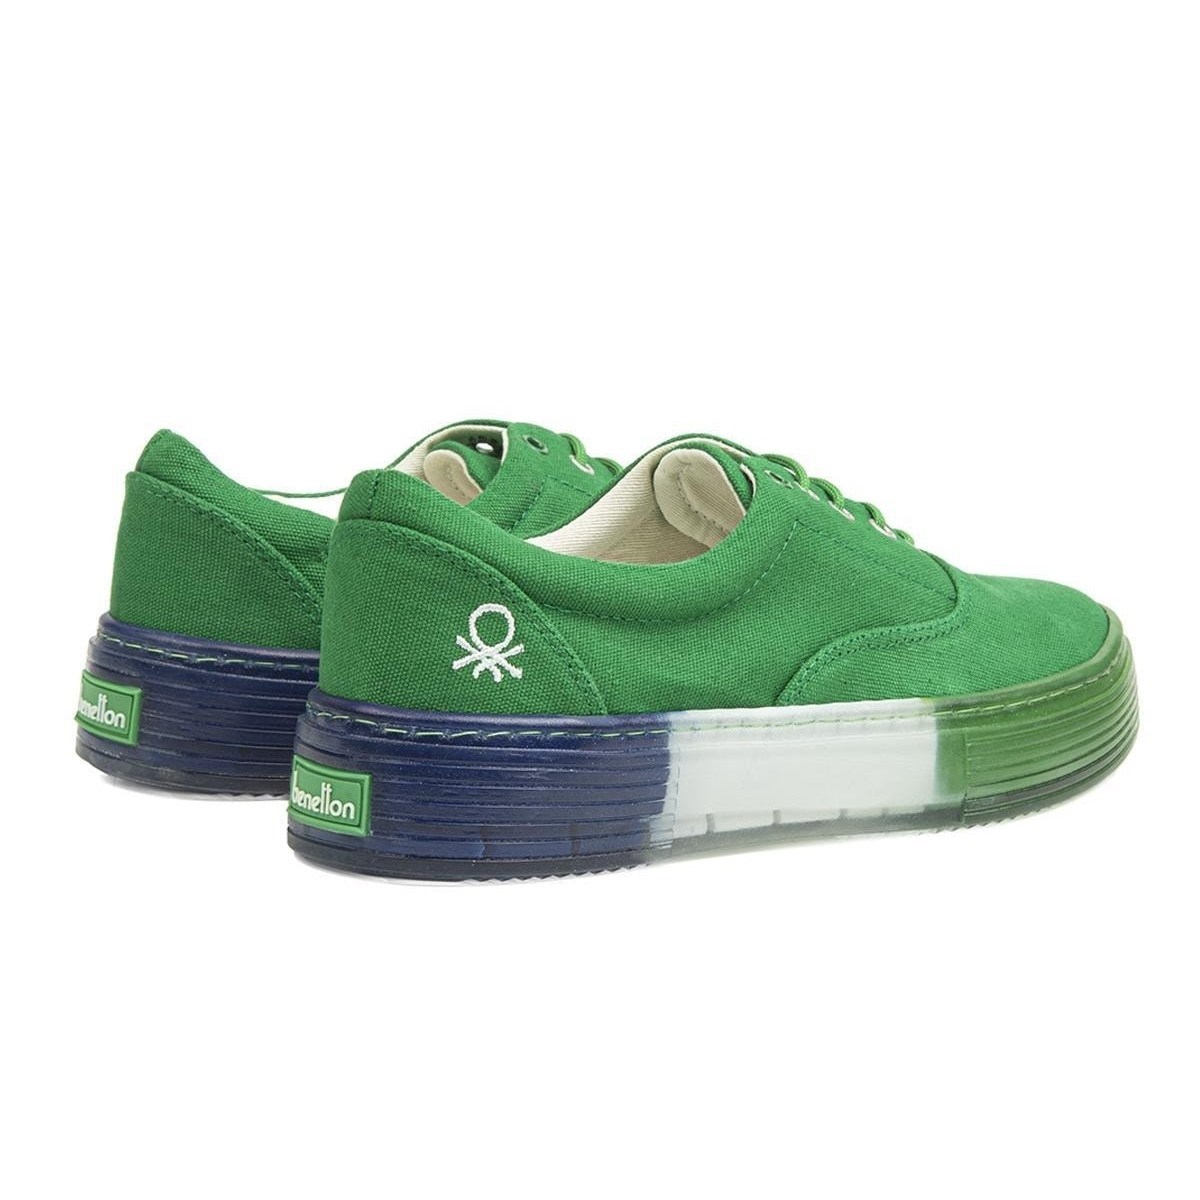 Benetton Kadın Ayakkabı BN-30696 91-Yesil